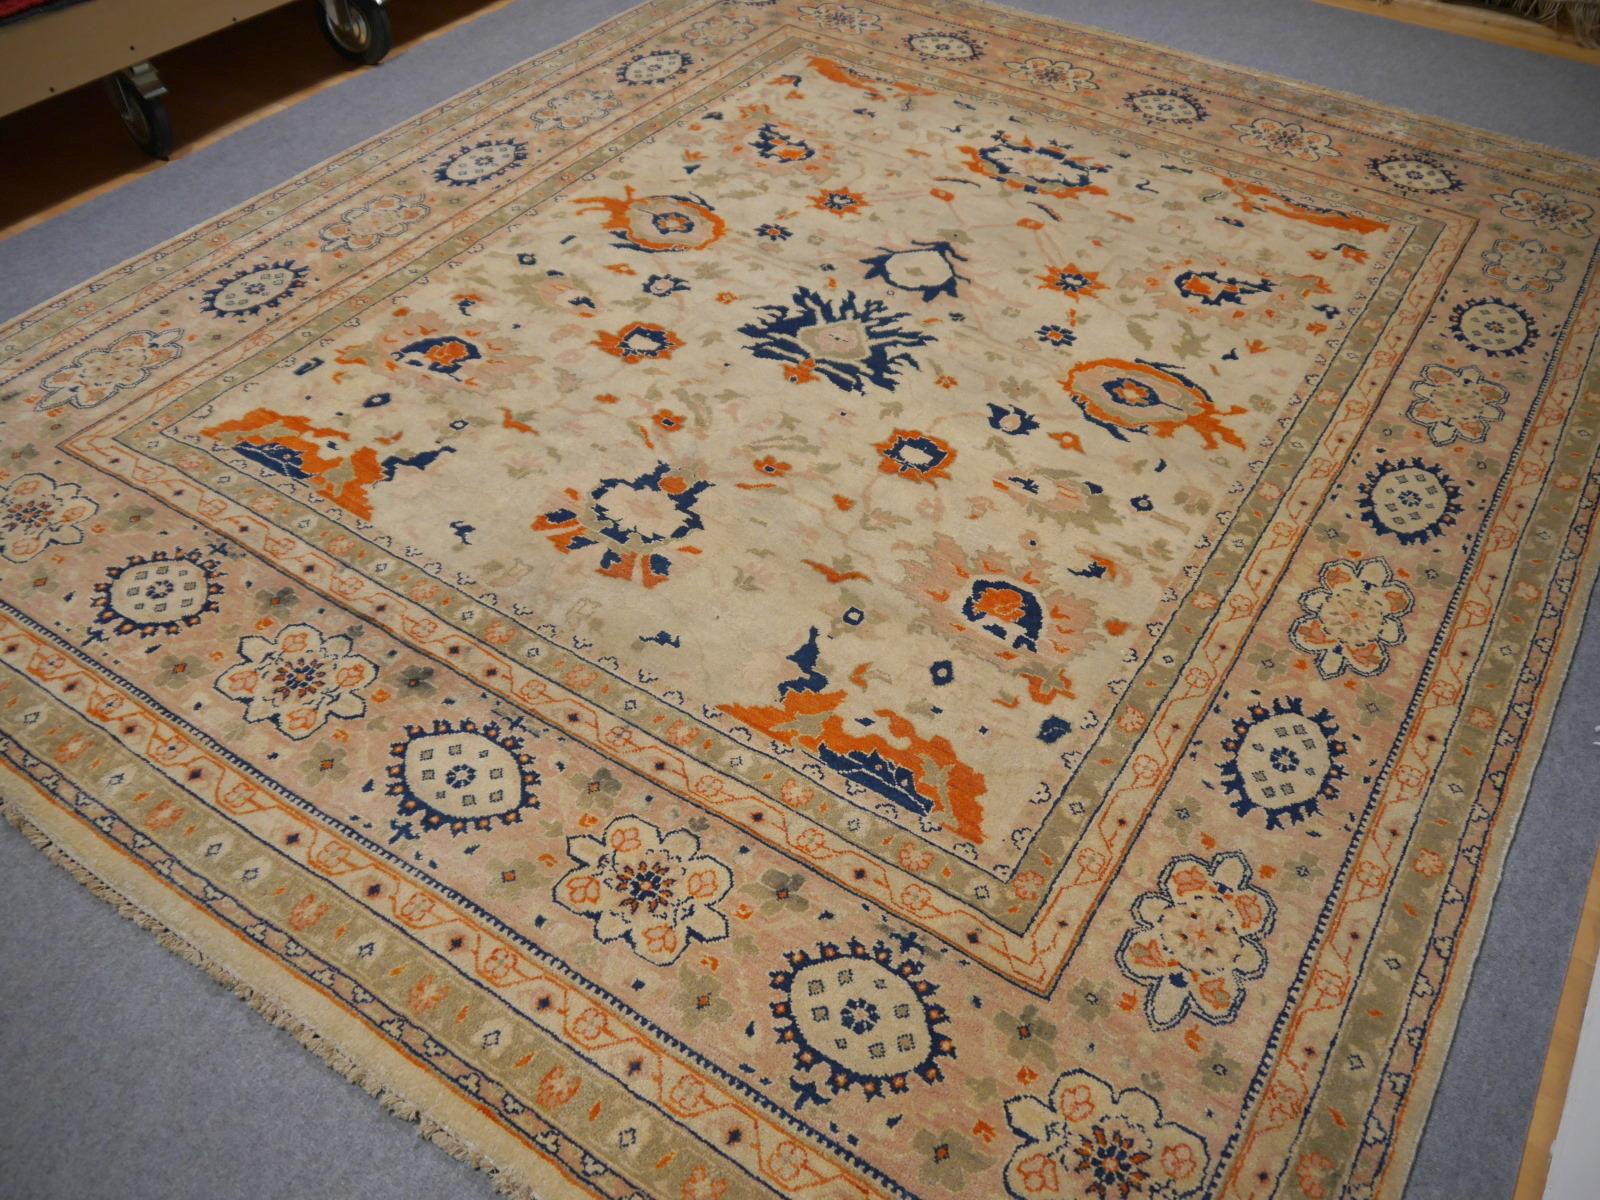 Un magnifique tapis contemporain de 8 x 10 pieds, noué à la main avec la laine la plus fine. Sur un fond crème clair, le motif de fleurs de lotus se tenant côte à côte est exécuté dans des tons orange, bleu et vert.
Le design est influencé par les